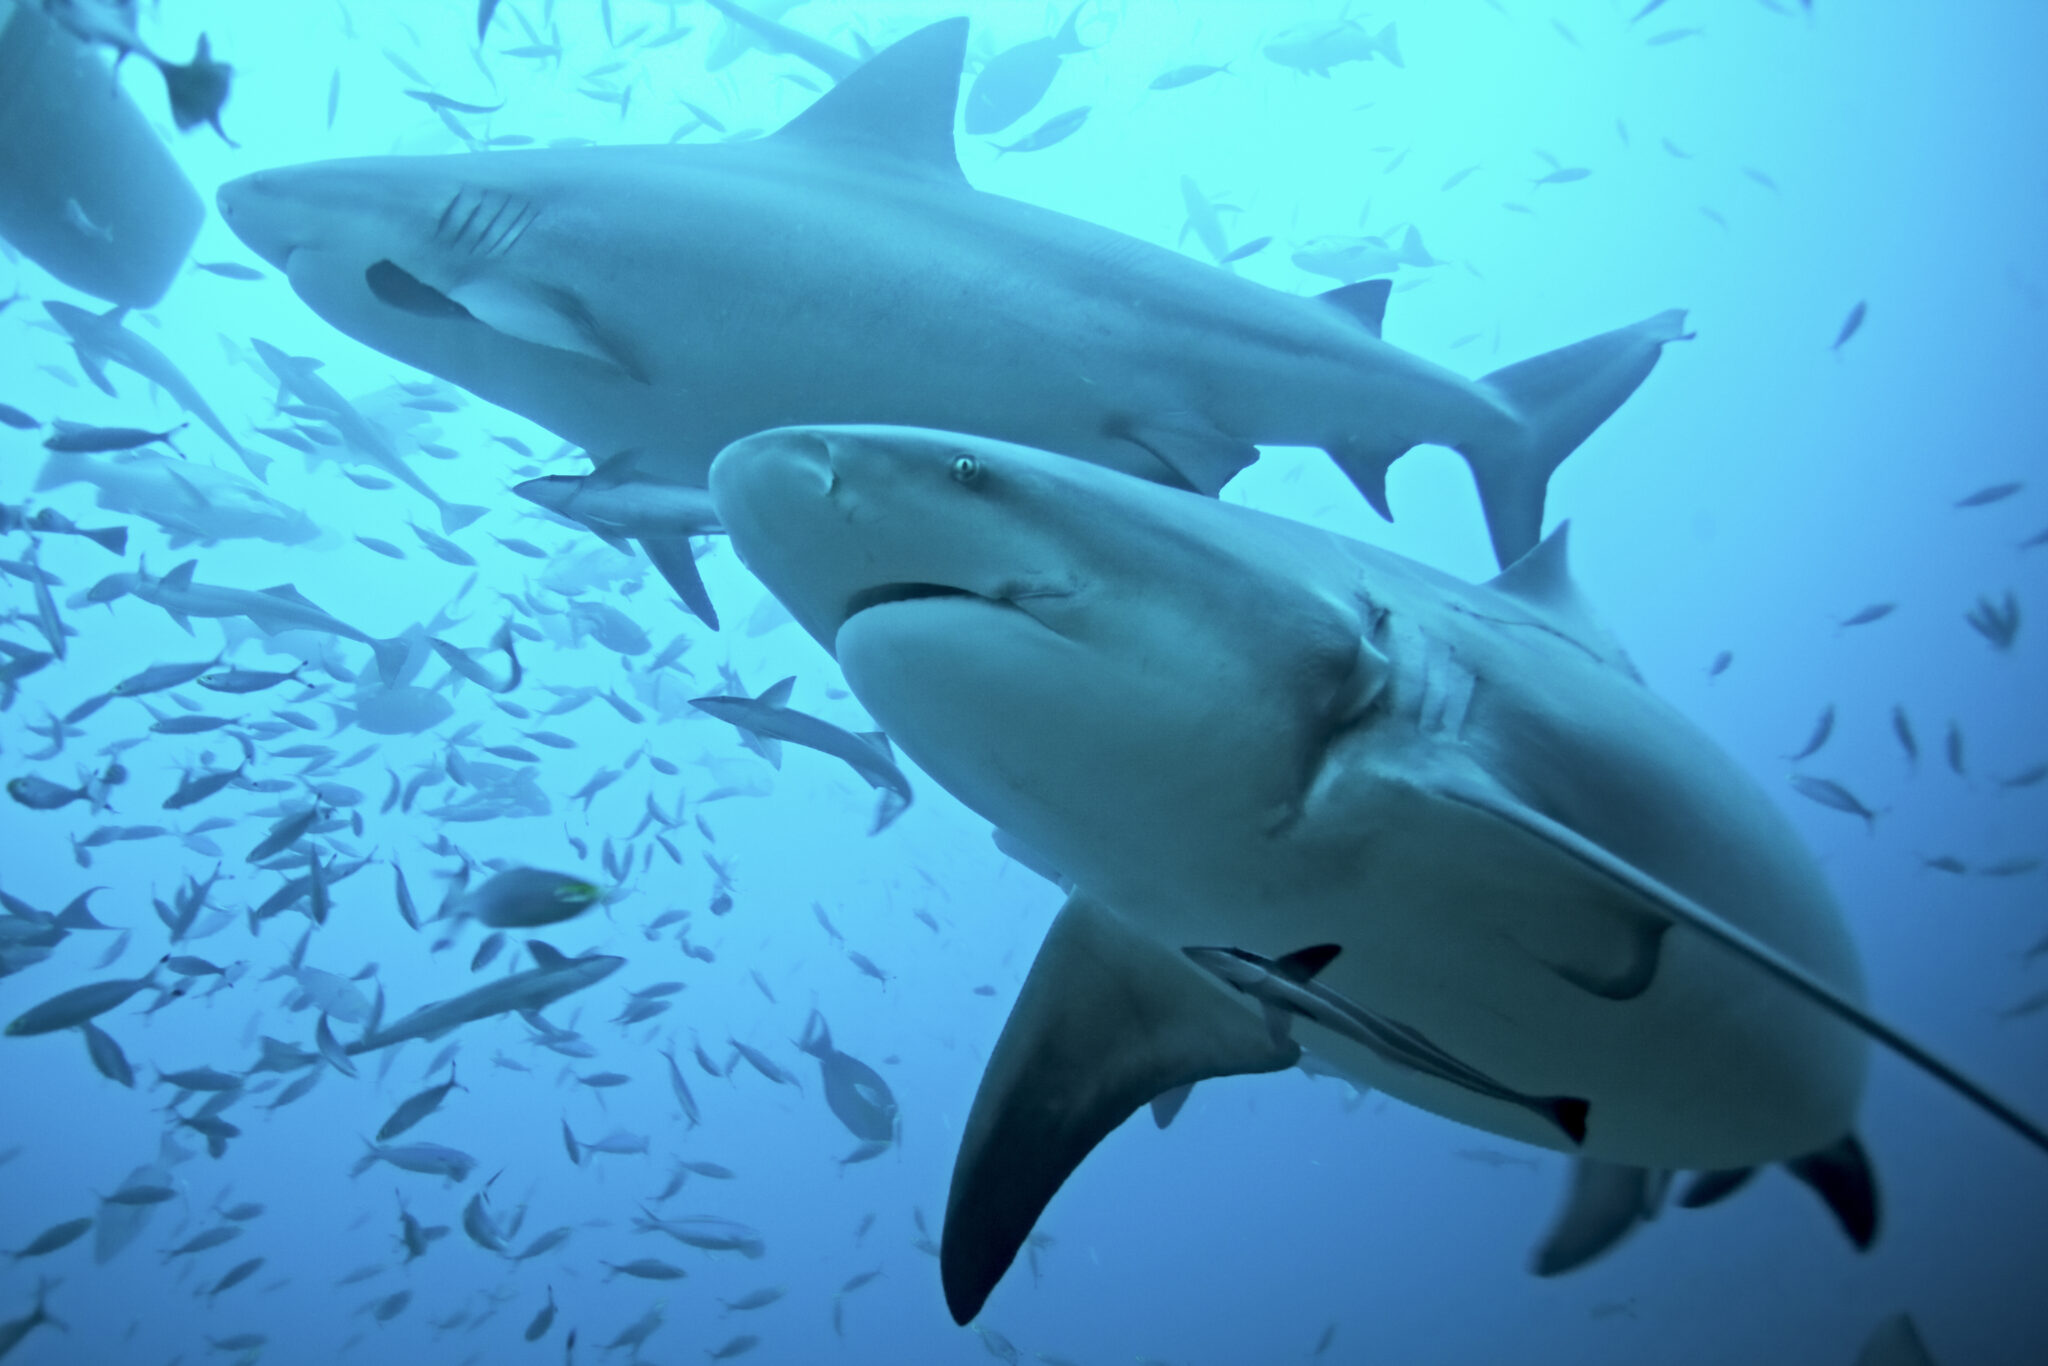 cruise line passenger killed by shark